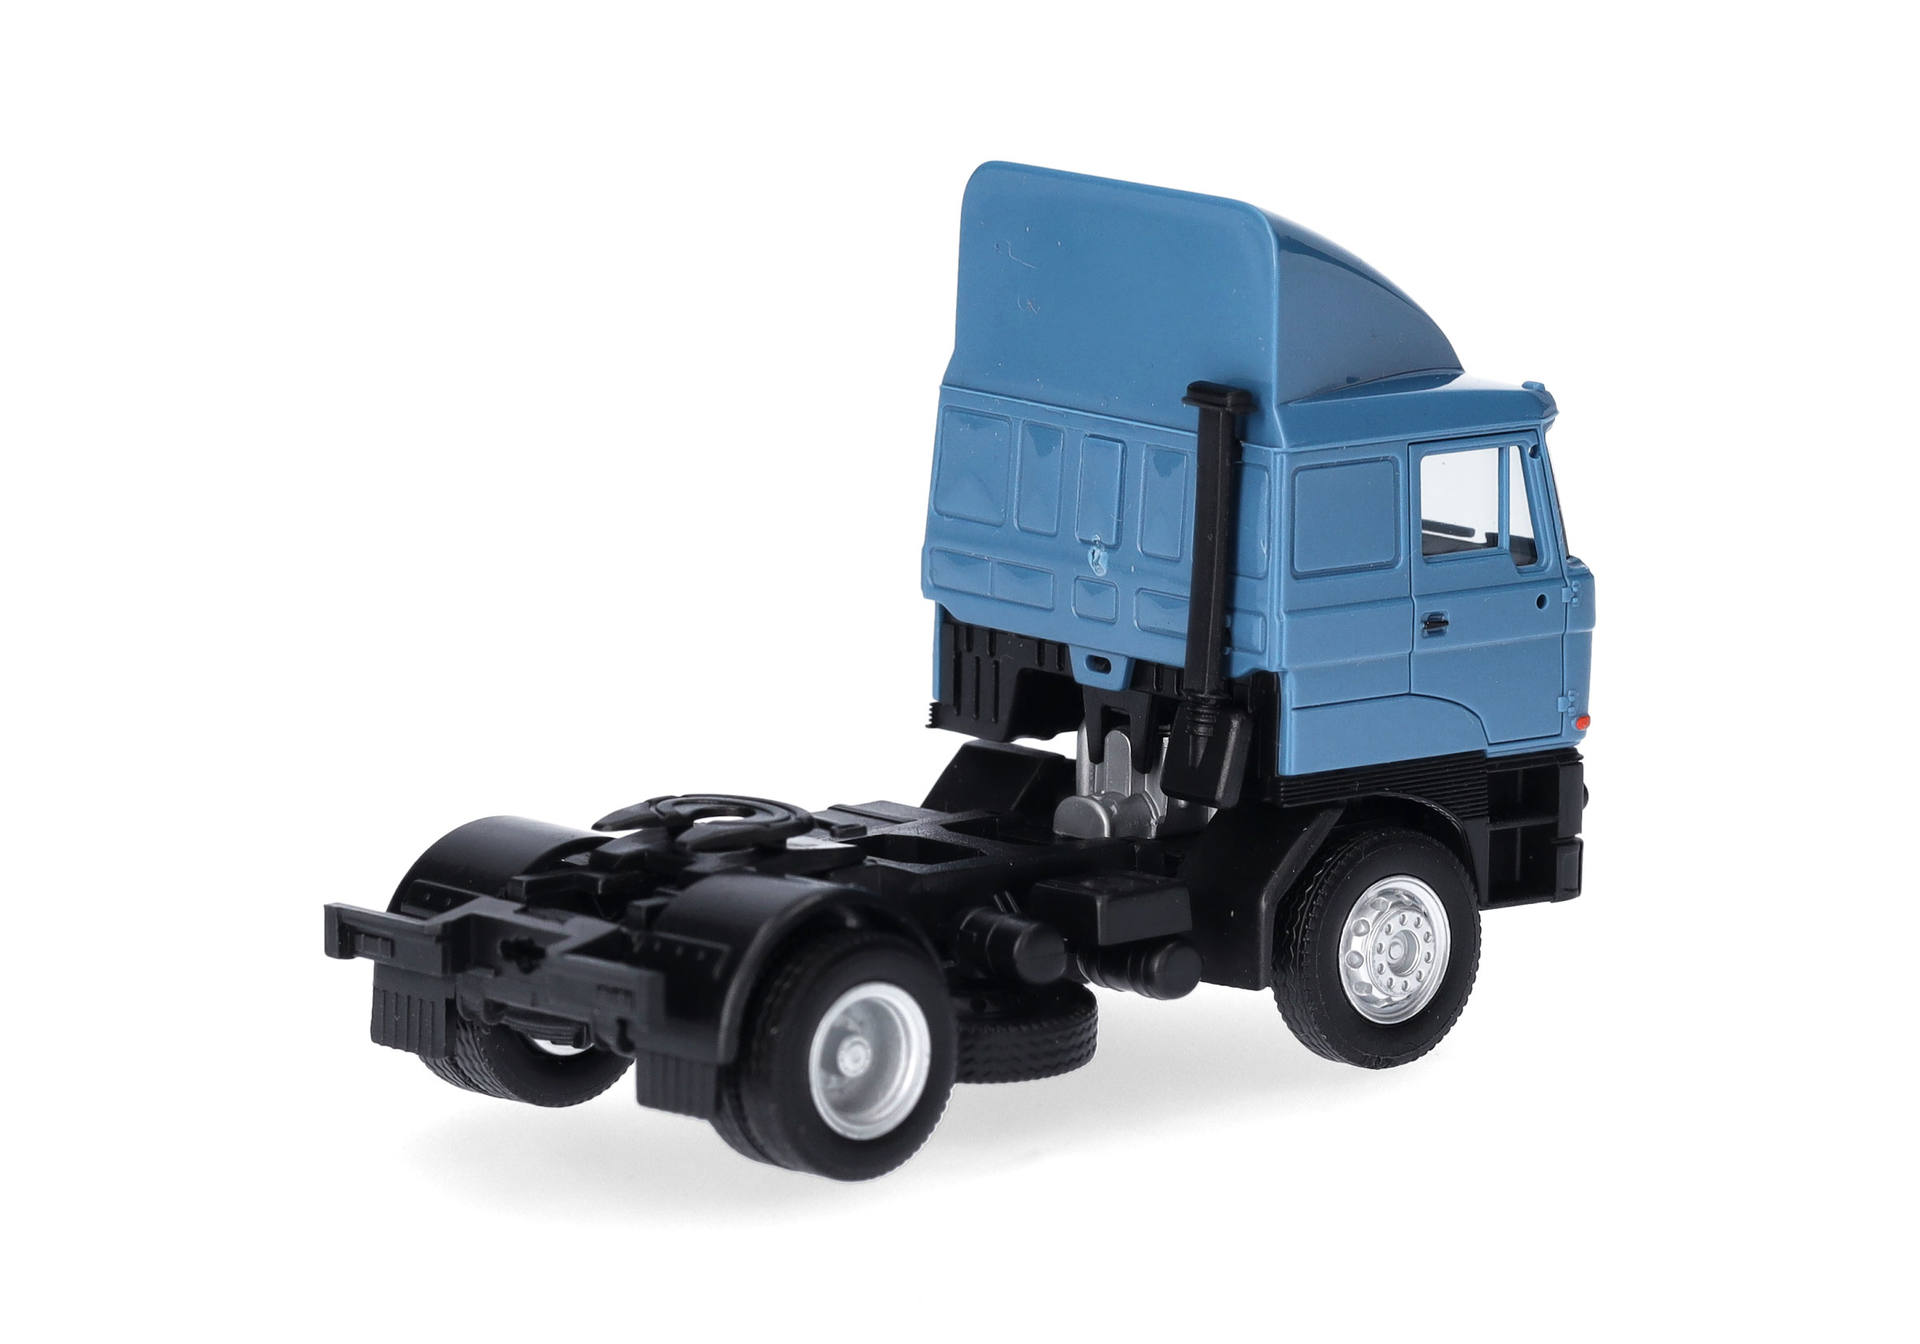 Rába rigid tractor 2 axles, brillant blue